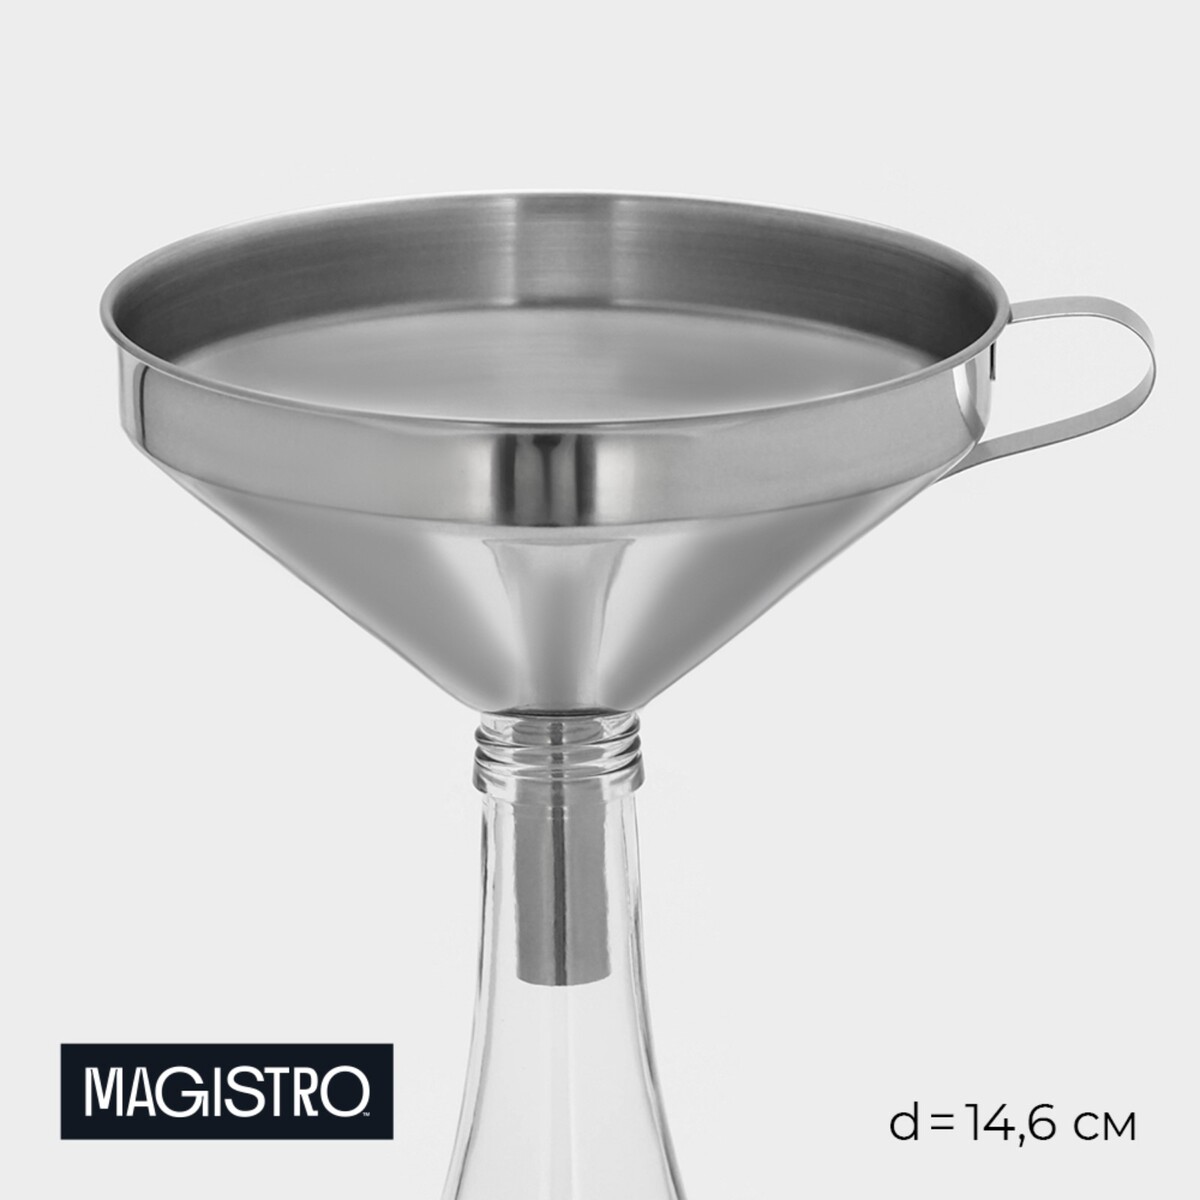 Воронка magistro steel, d=14,6 см, 201 сталь сепаратор для яиц steel 304 сталь хромированный